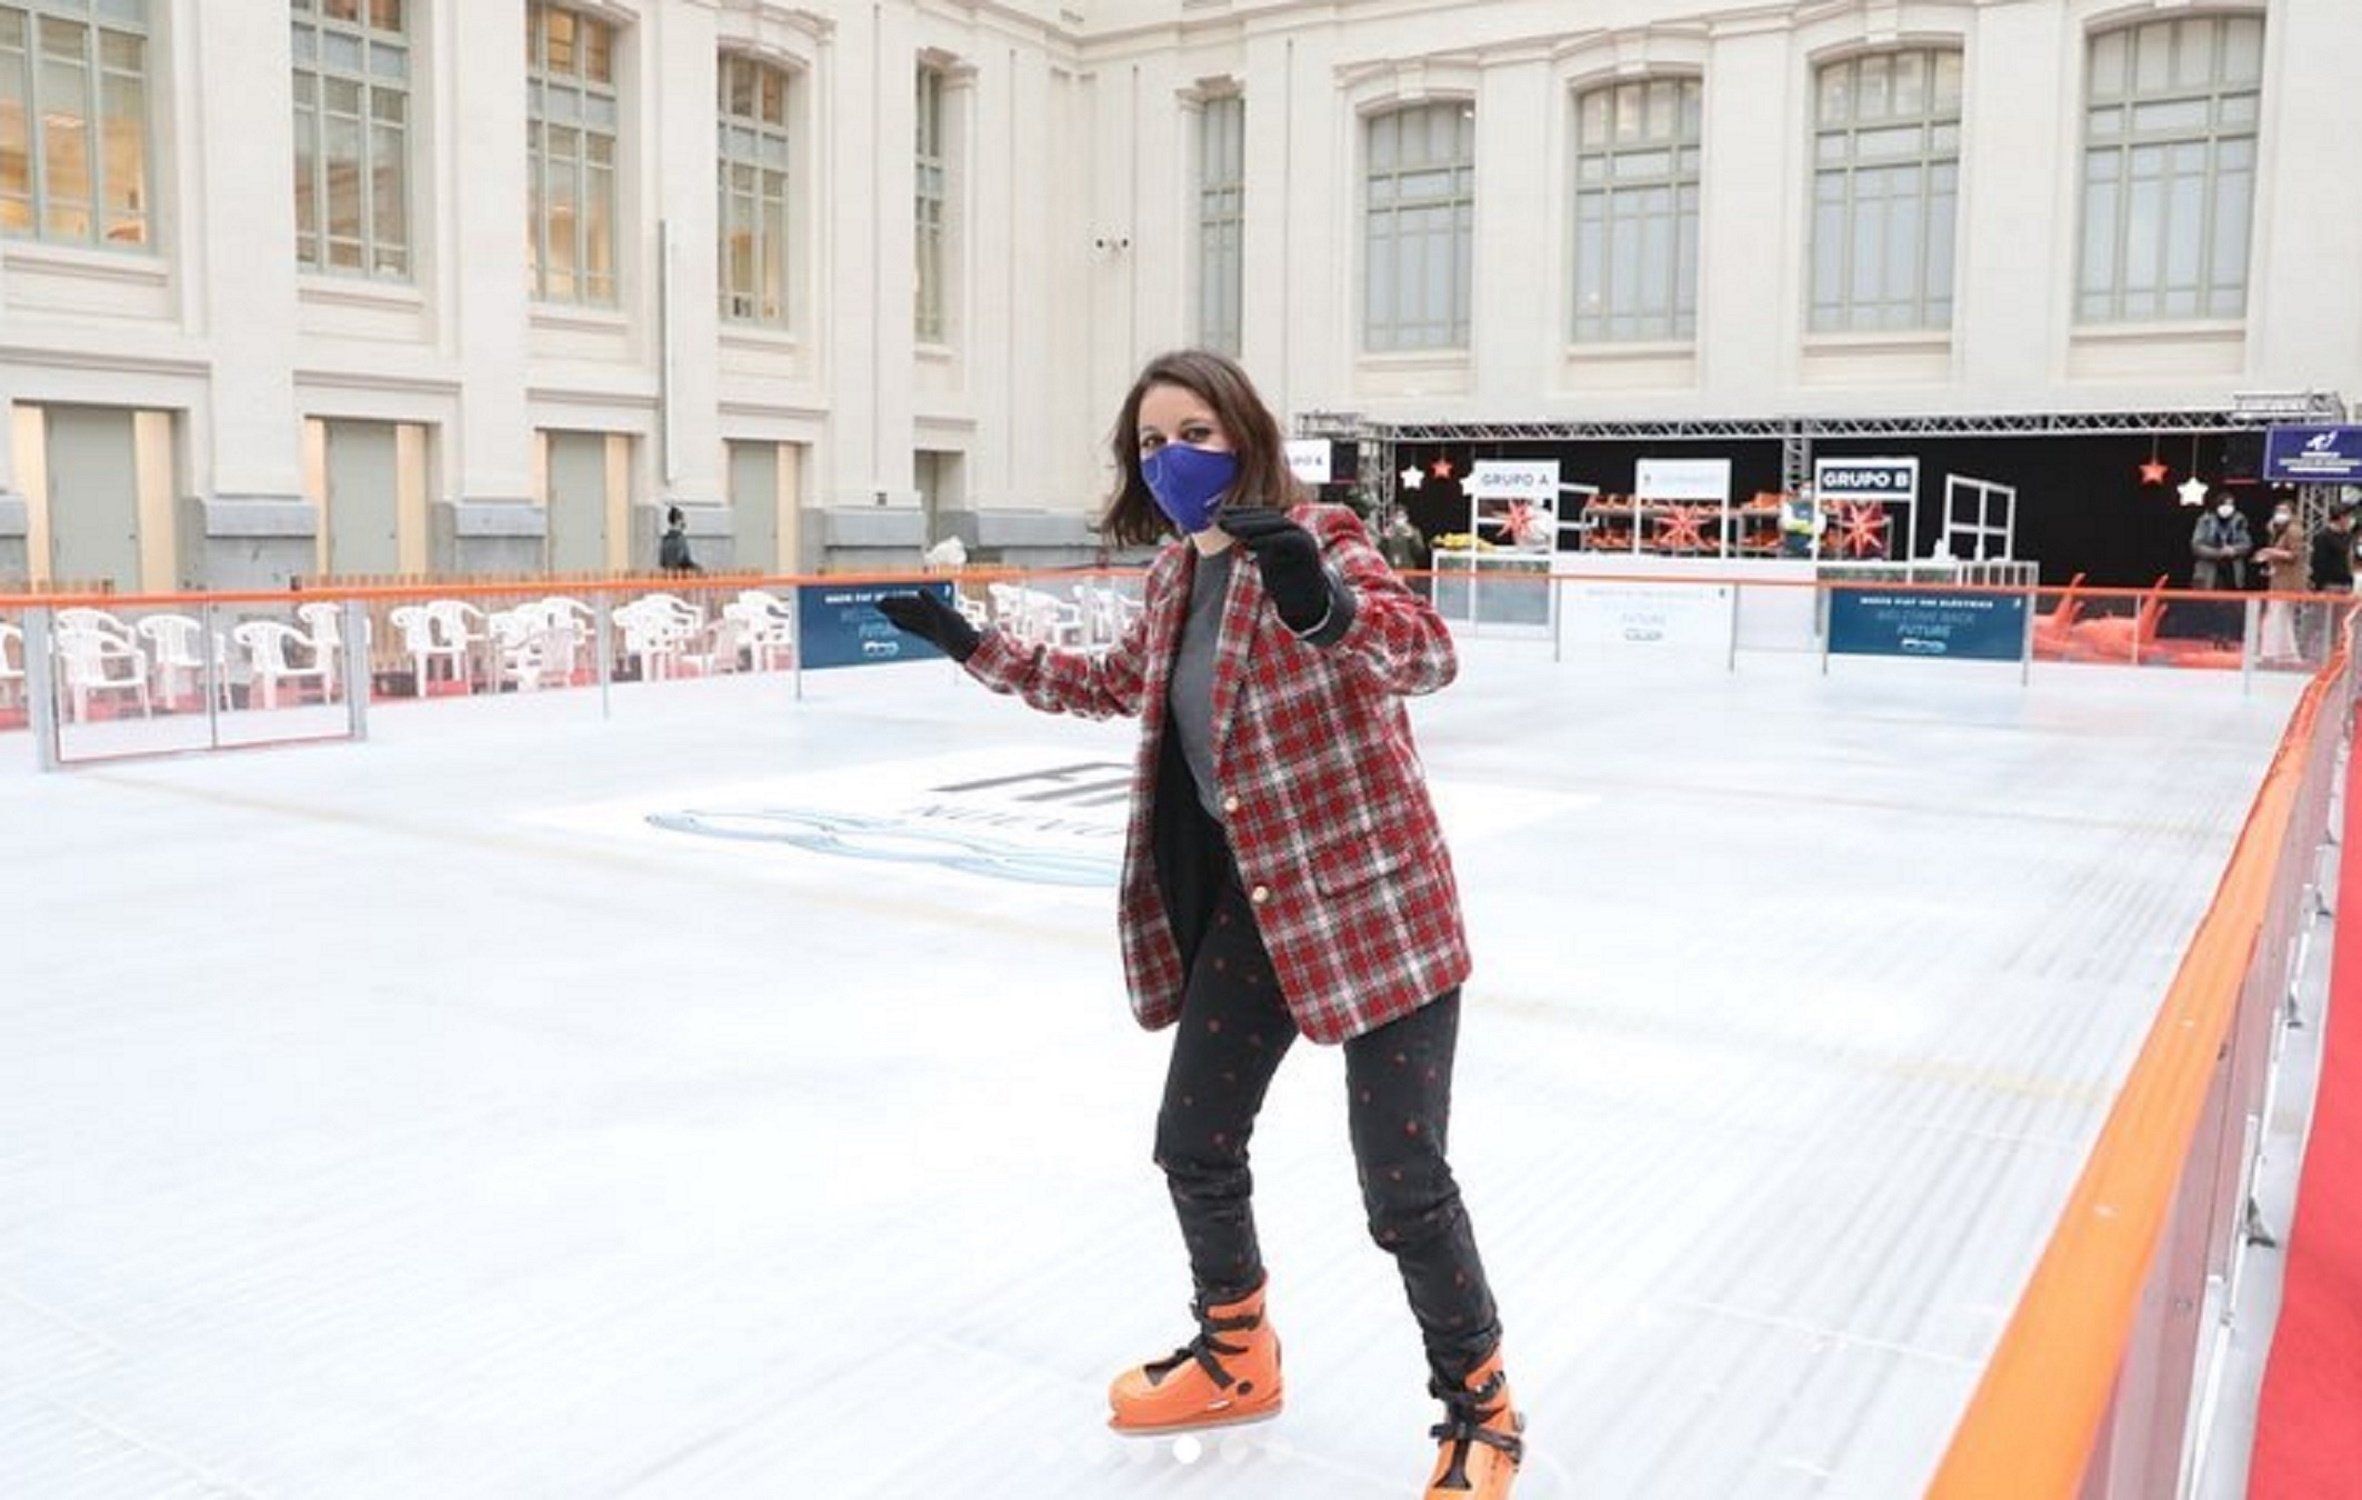 VÍDEO El costalazo de Andrea Levy en una pista de hielo: "Ha dolido"